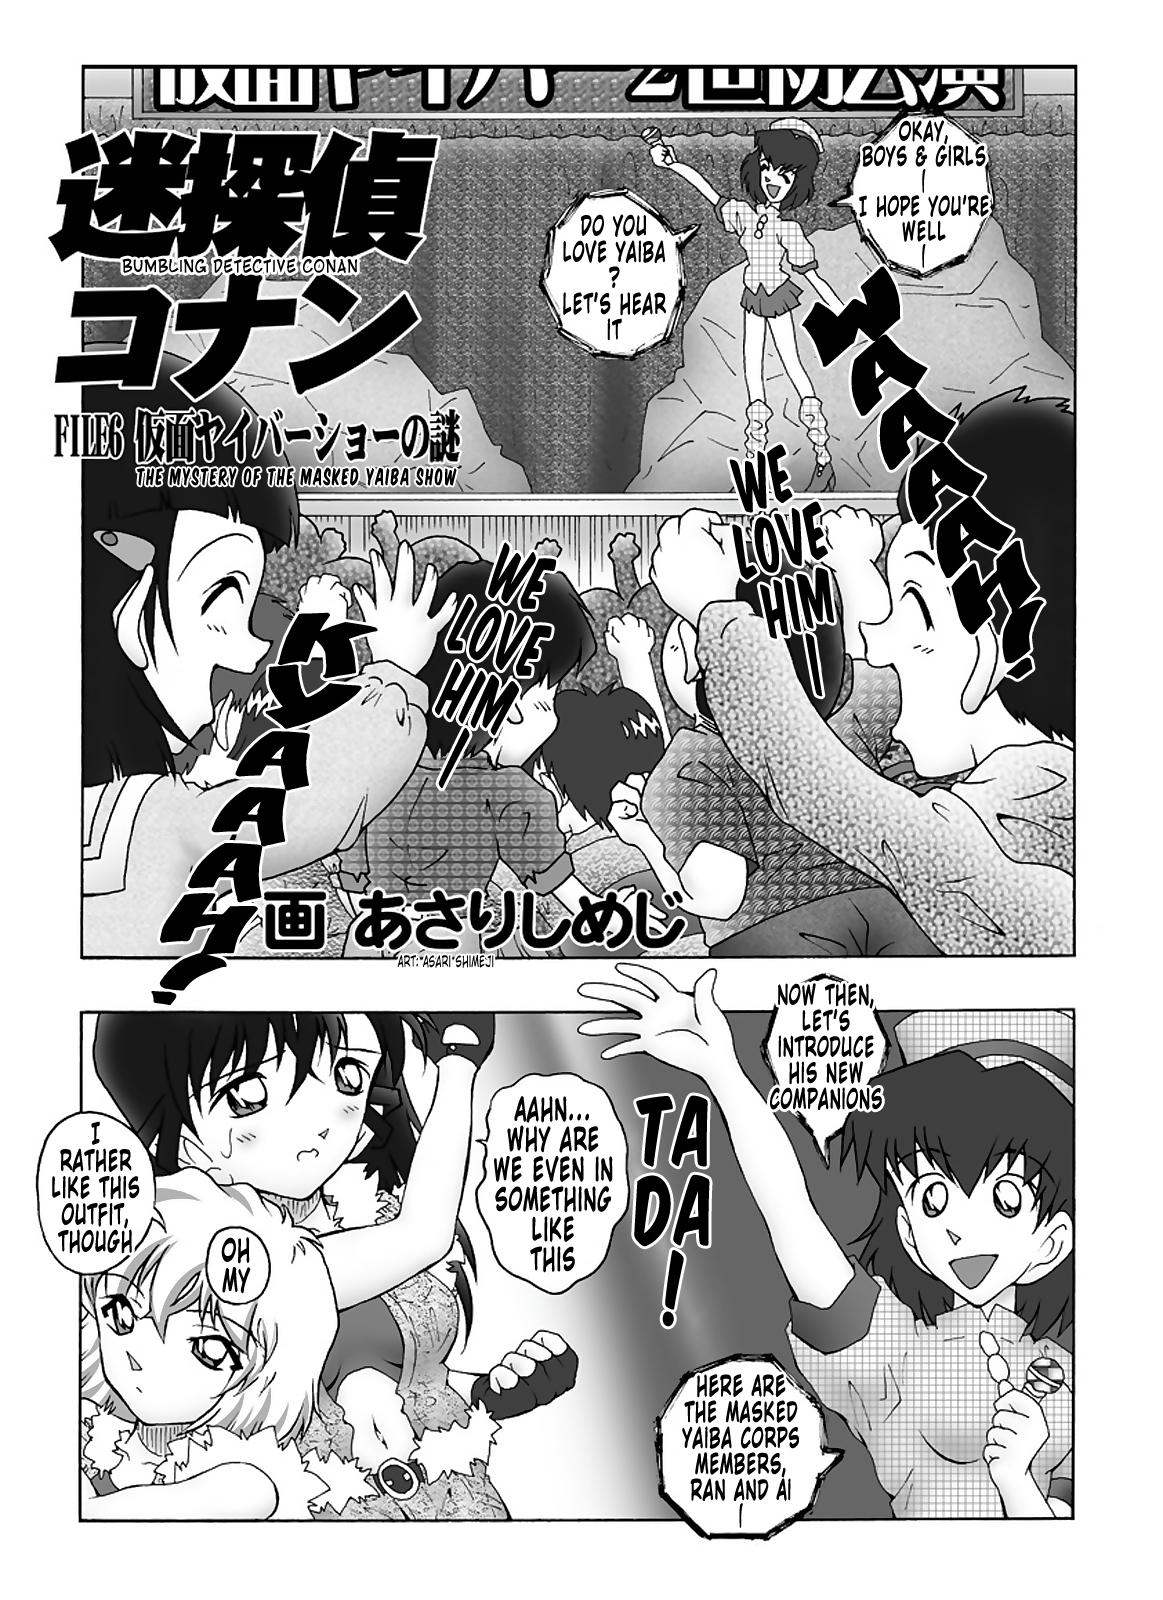 Bangkok Bumbling Detective Conan - File 6: The Mystery Of The Masked Yaiba Show - Detective conan Olderwoman - Page 4